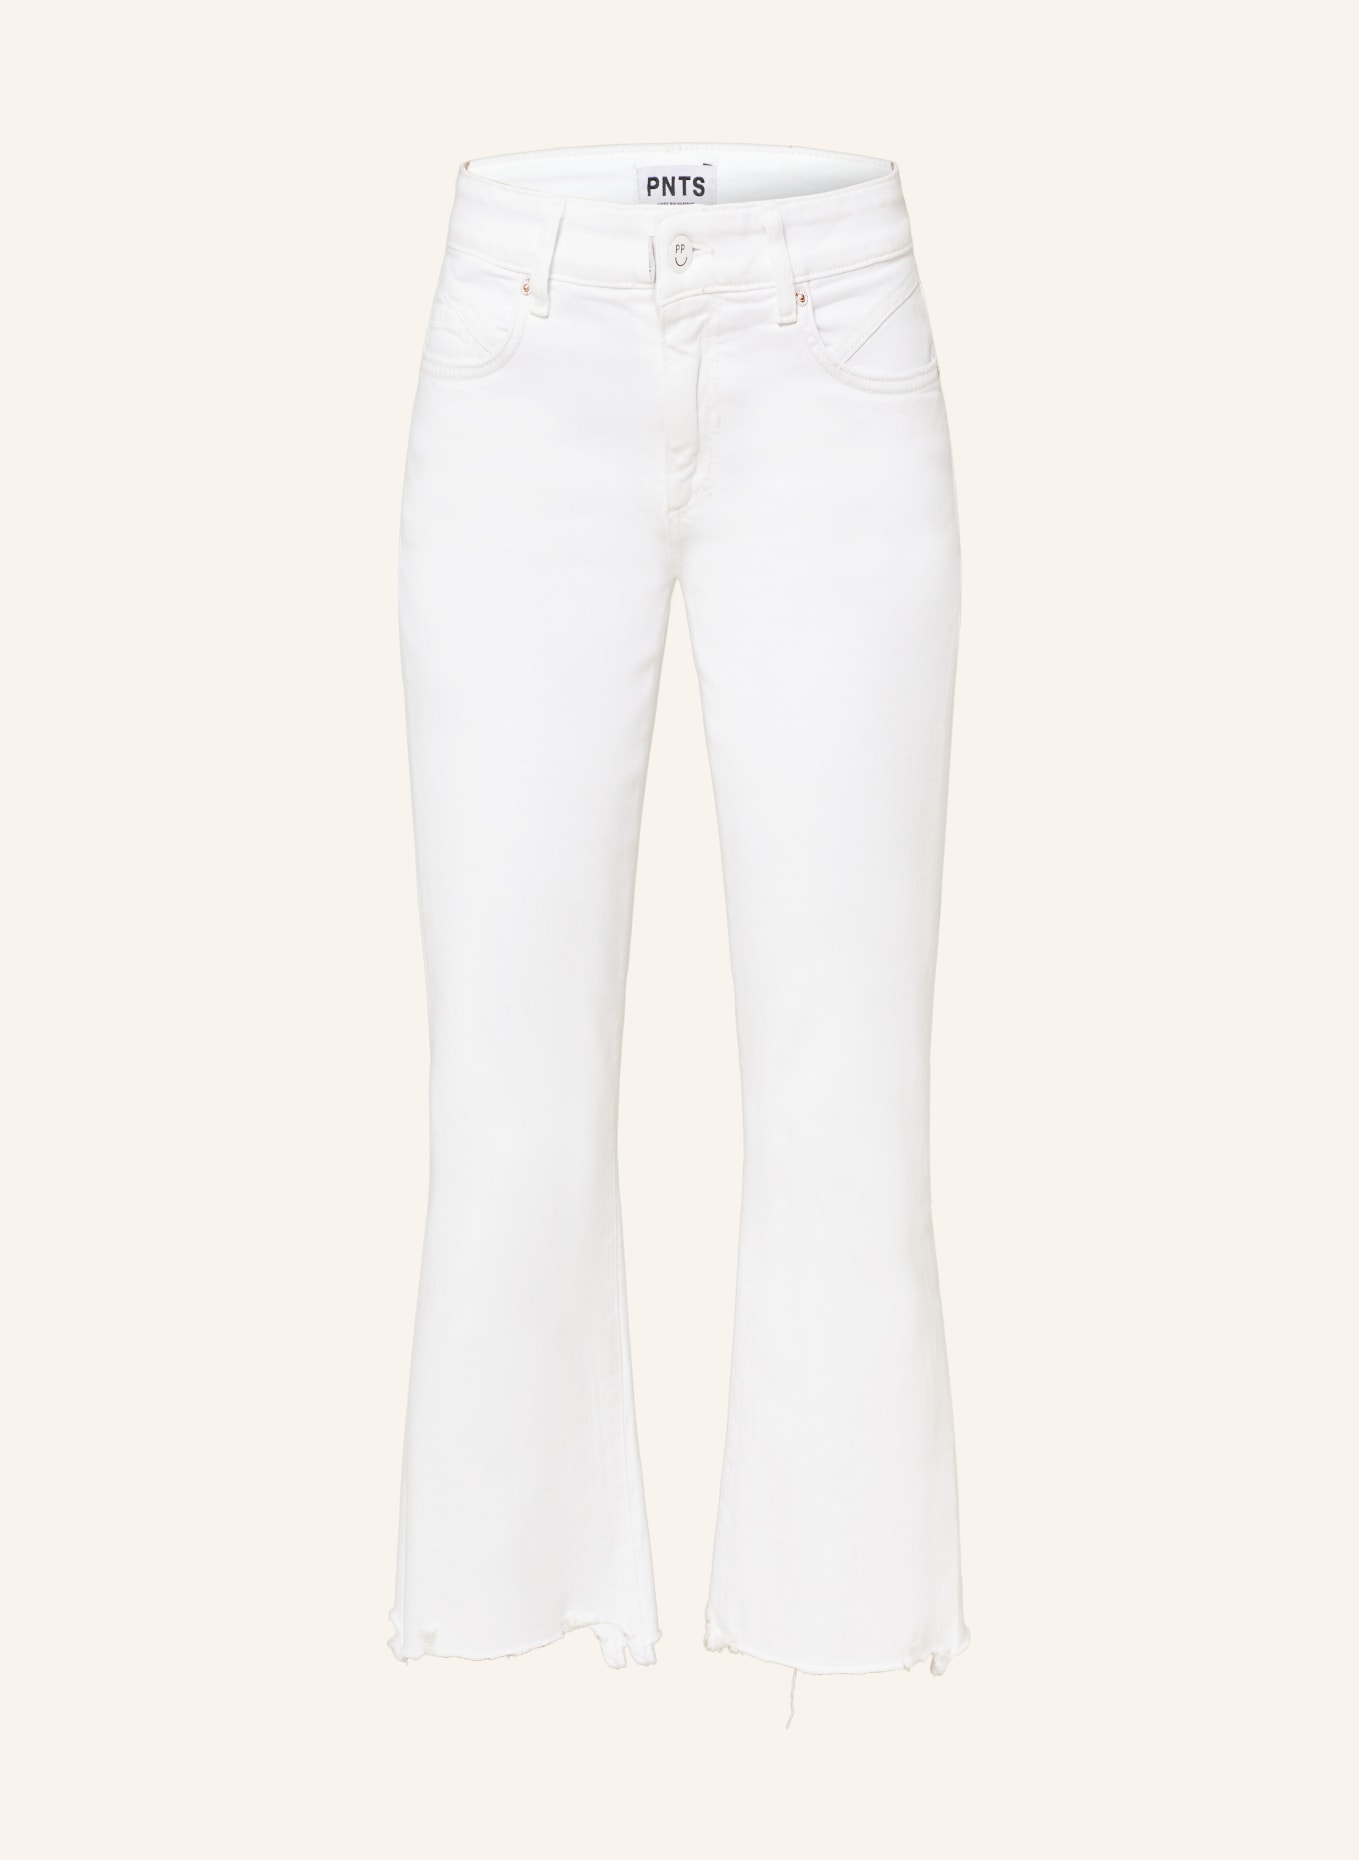 PNTS 7/8 jeans THE MINI B, Color: 99 SNOW WHITE (Image 1)